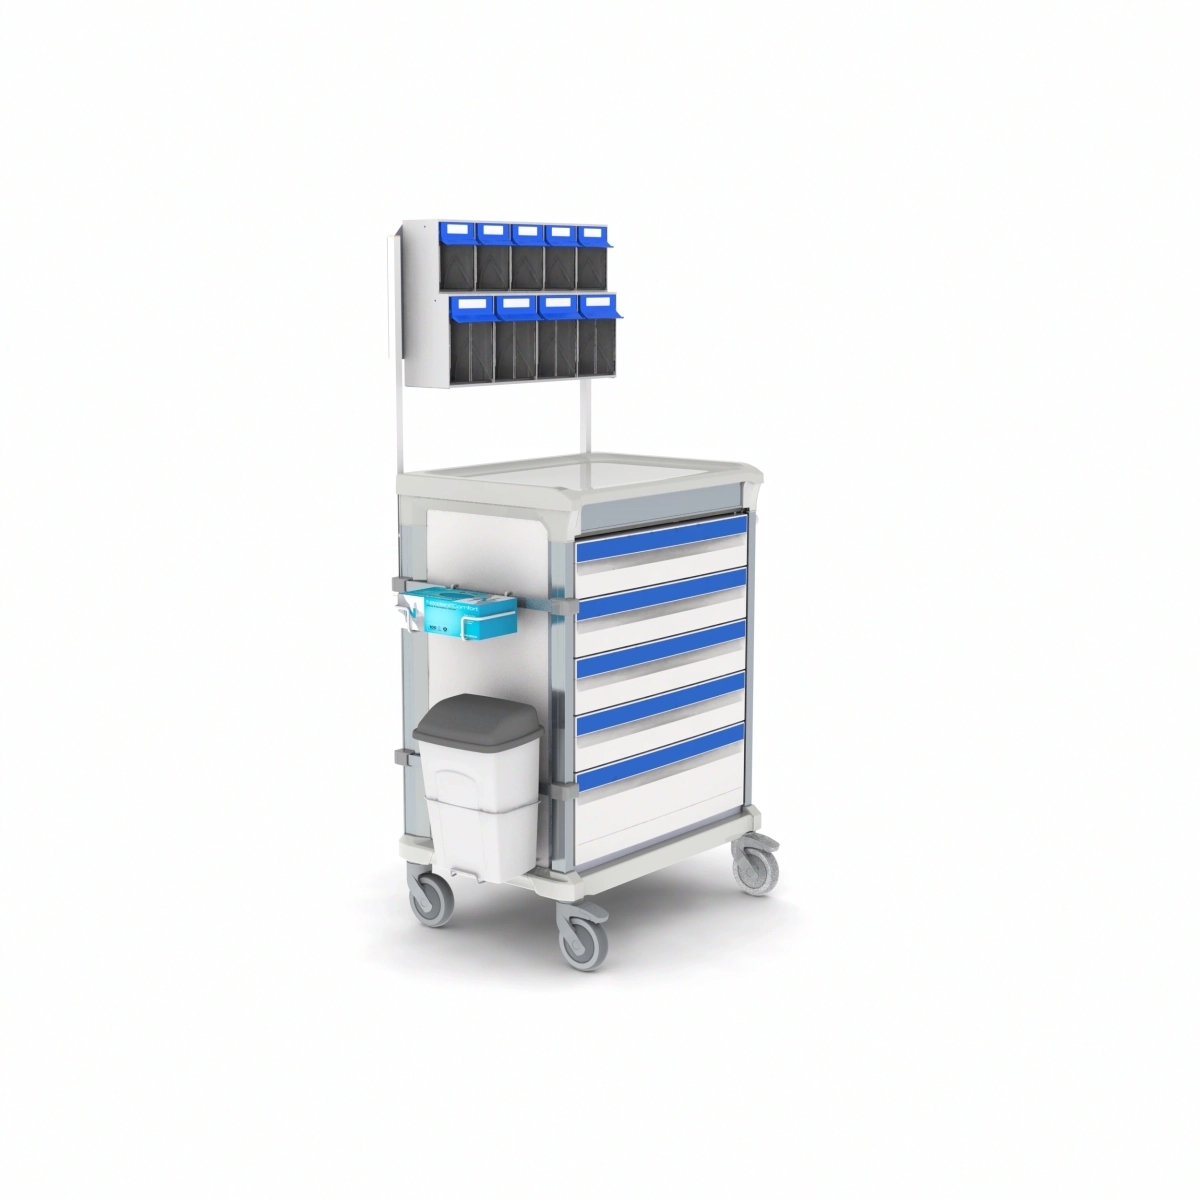 Chariot d'anesthésie à tiroir télescopique conforme aux normes d'hygiène pour garantir un environnement clinique propre - WEECART_0